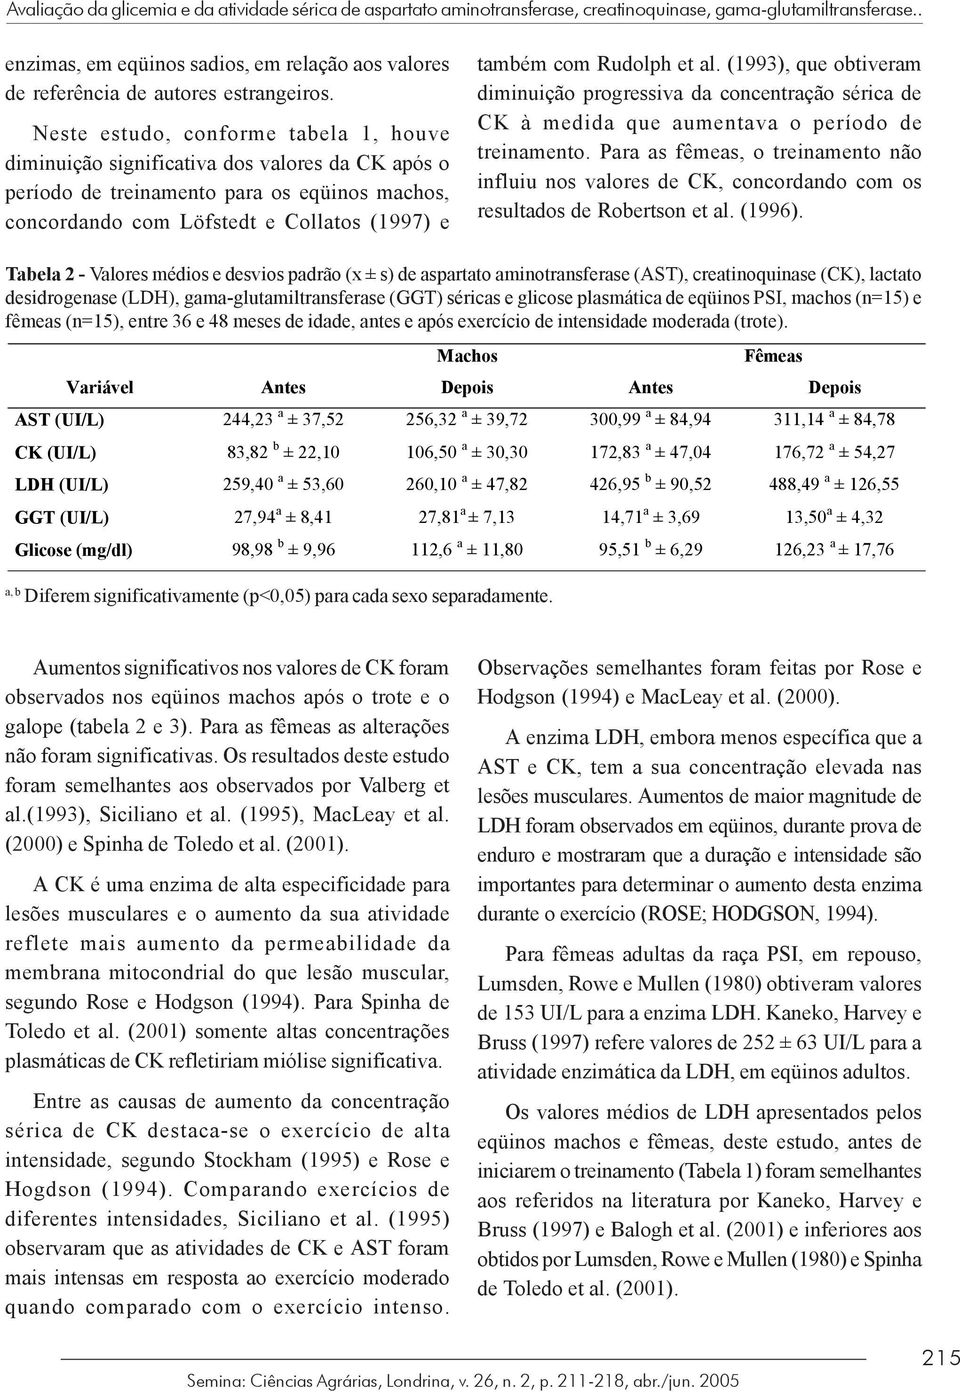 Neste estudo, conforme tabela 1, houve diminuição significativa dos valores da CK após o período de treinamento para os eqüinos machos, concordando com Löfstedt e Collatos (1997) e também com Rudolph